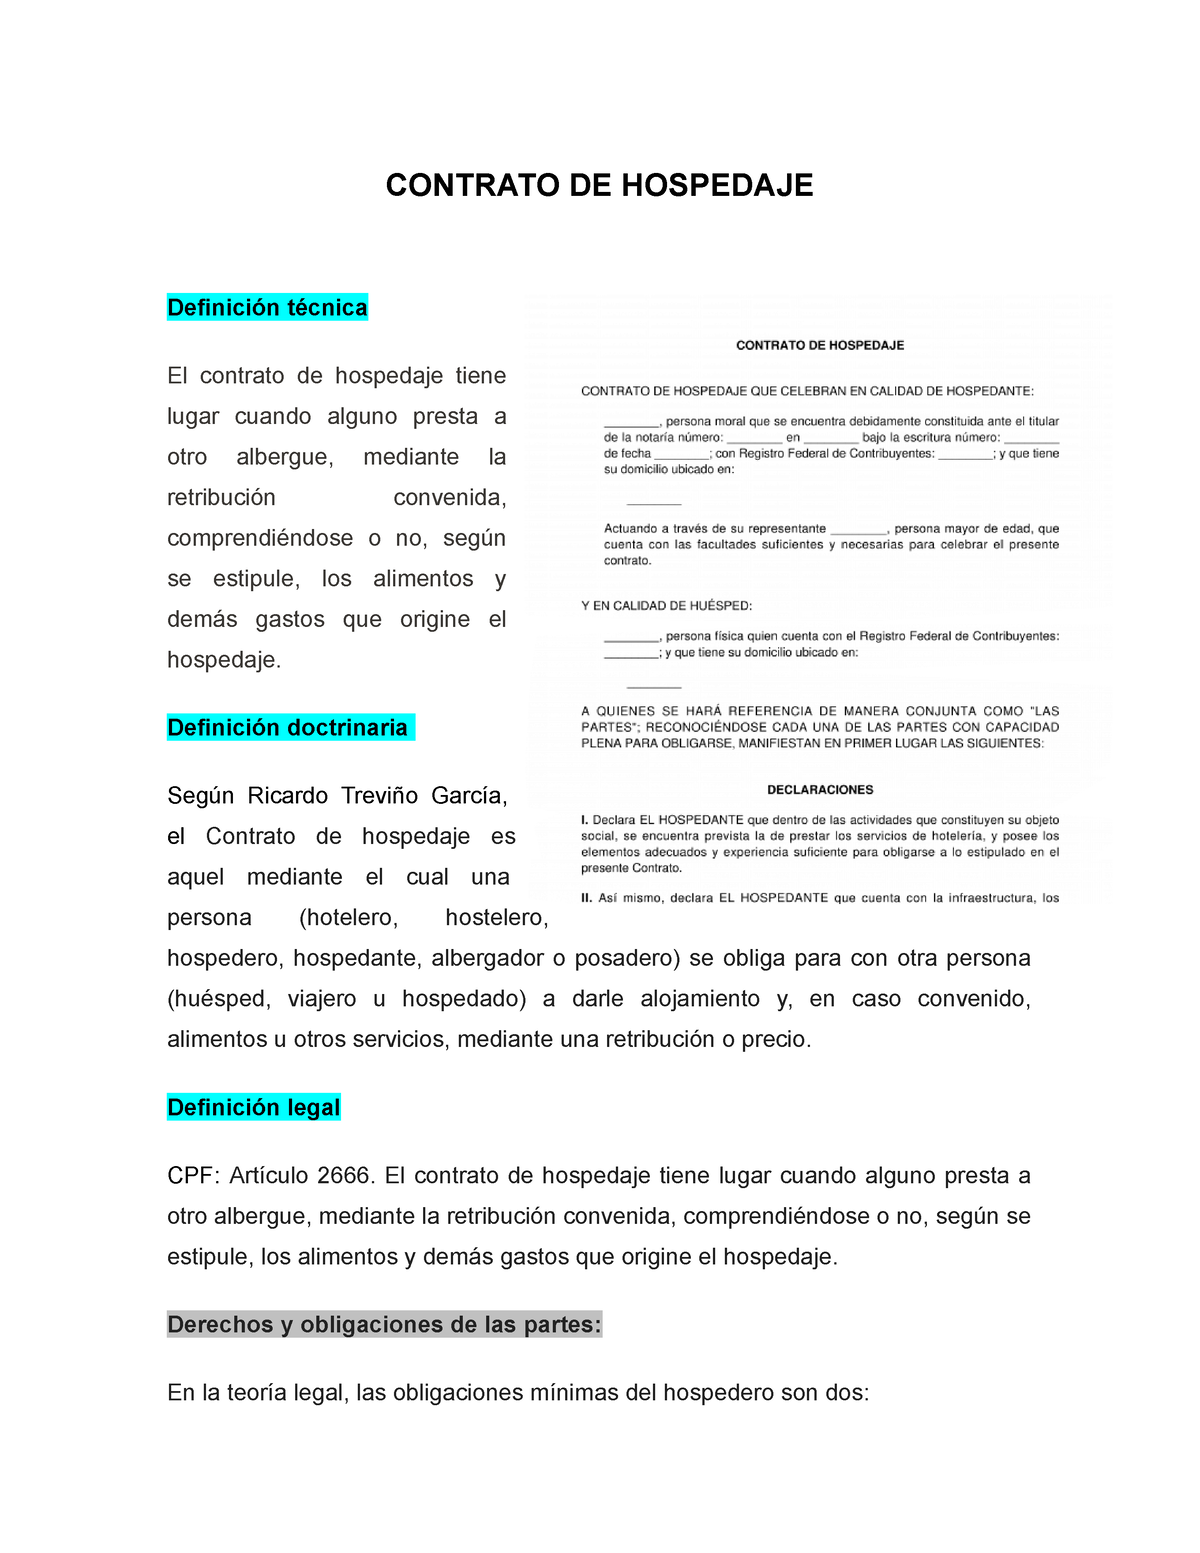 Contrato De Hospedaje Contrato De Hospedaje Definición Técnica El Contrato De Hospedaje Tiene 3933